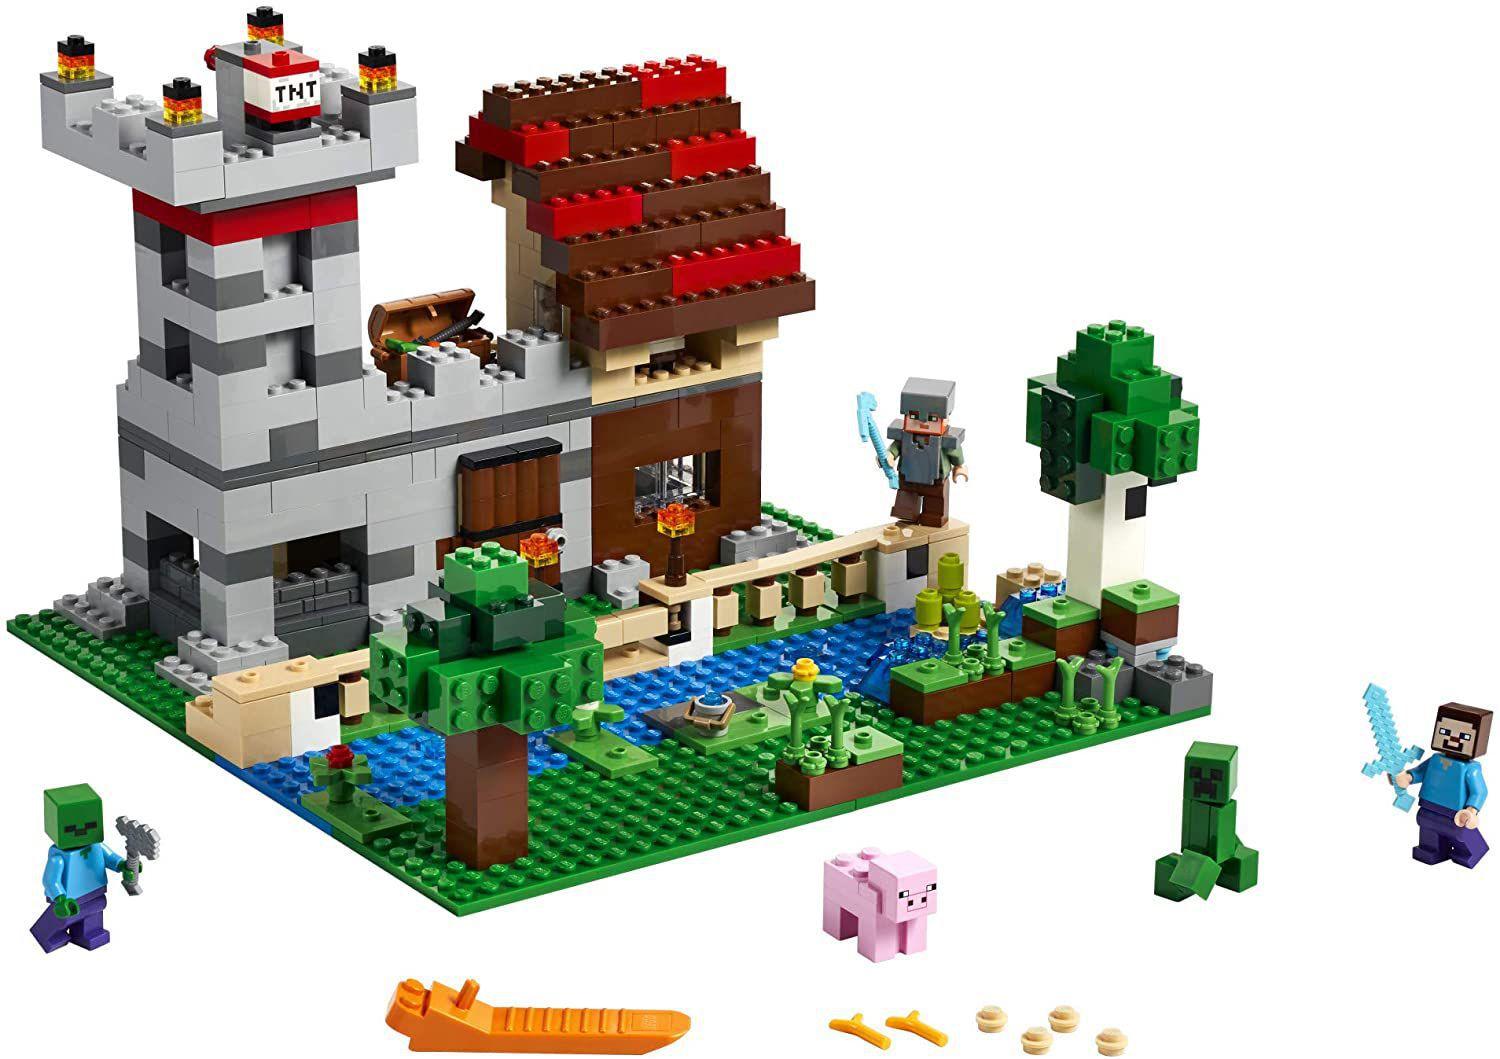 Lego Minecraft The Crafting Box 3.0 - Lego 21161